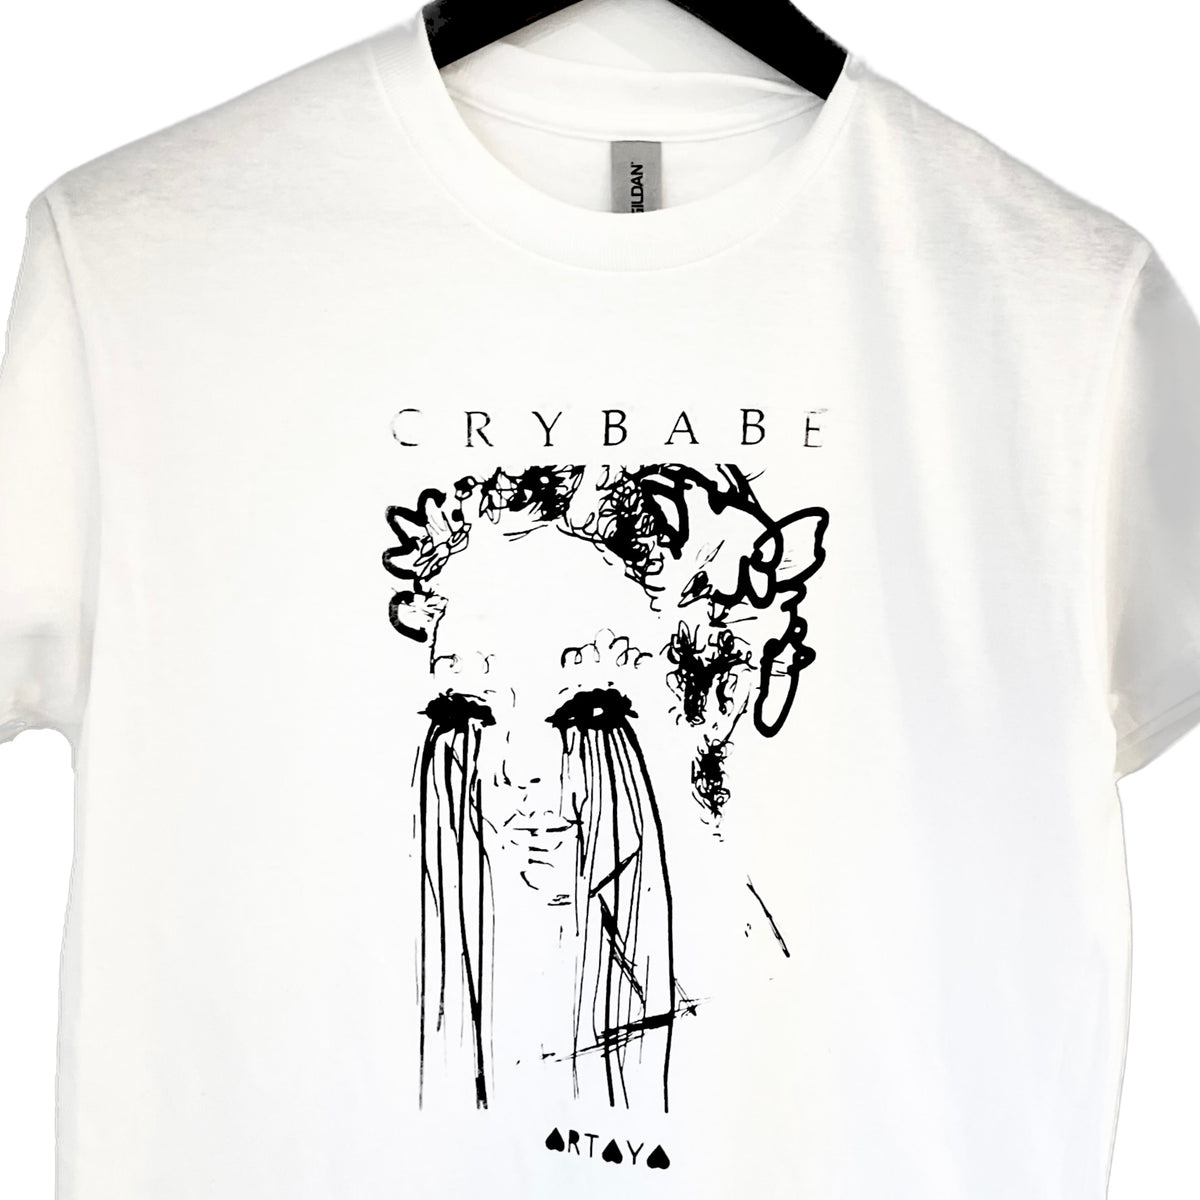 Crybabe T-shirt (misfit screenprinted version)